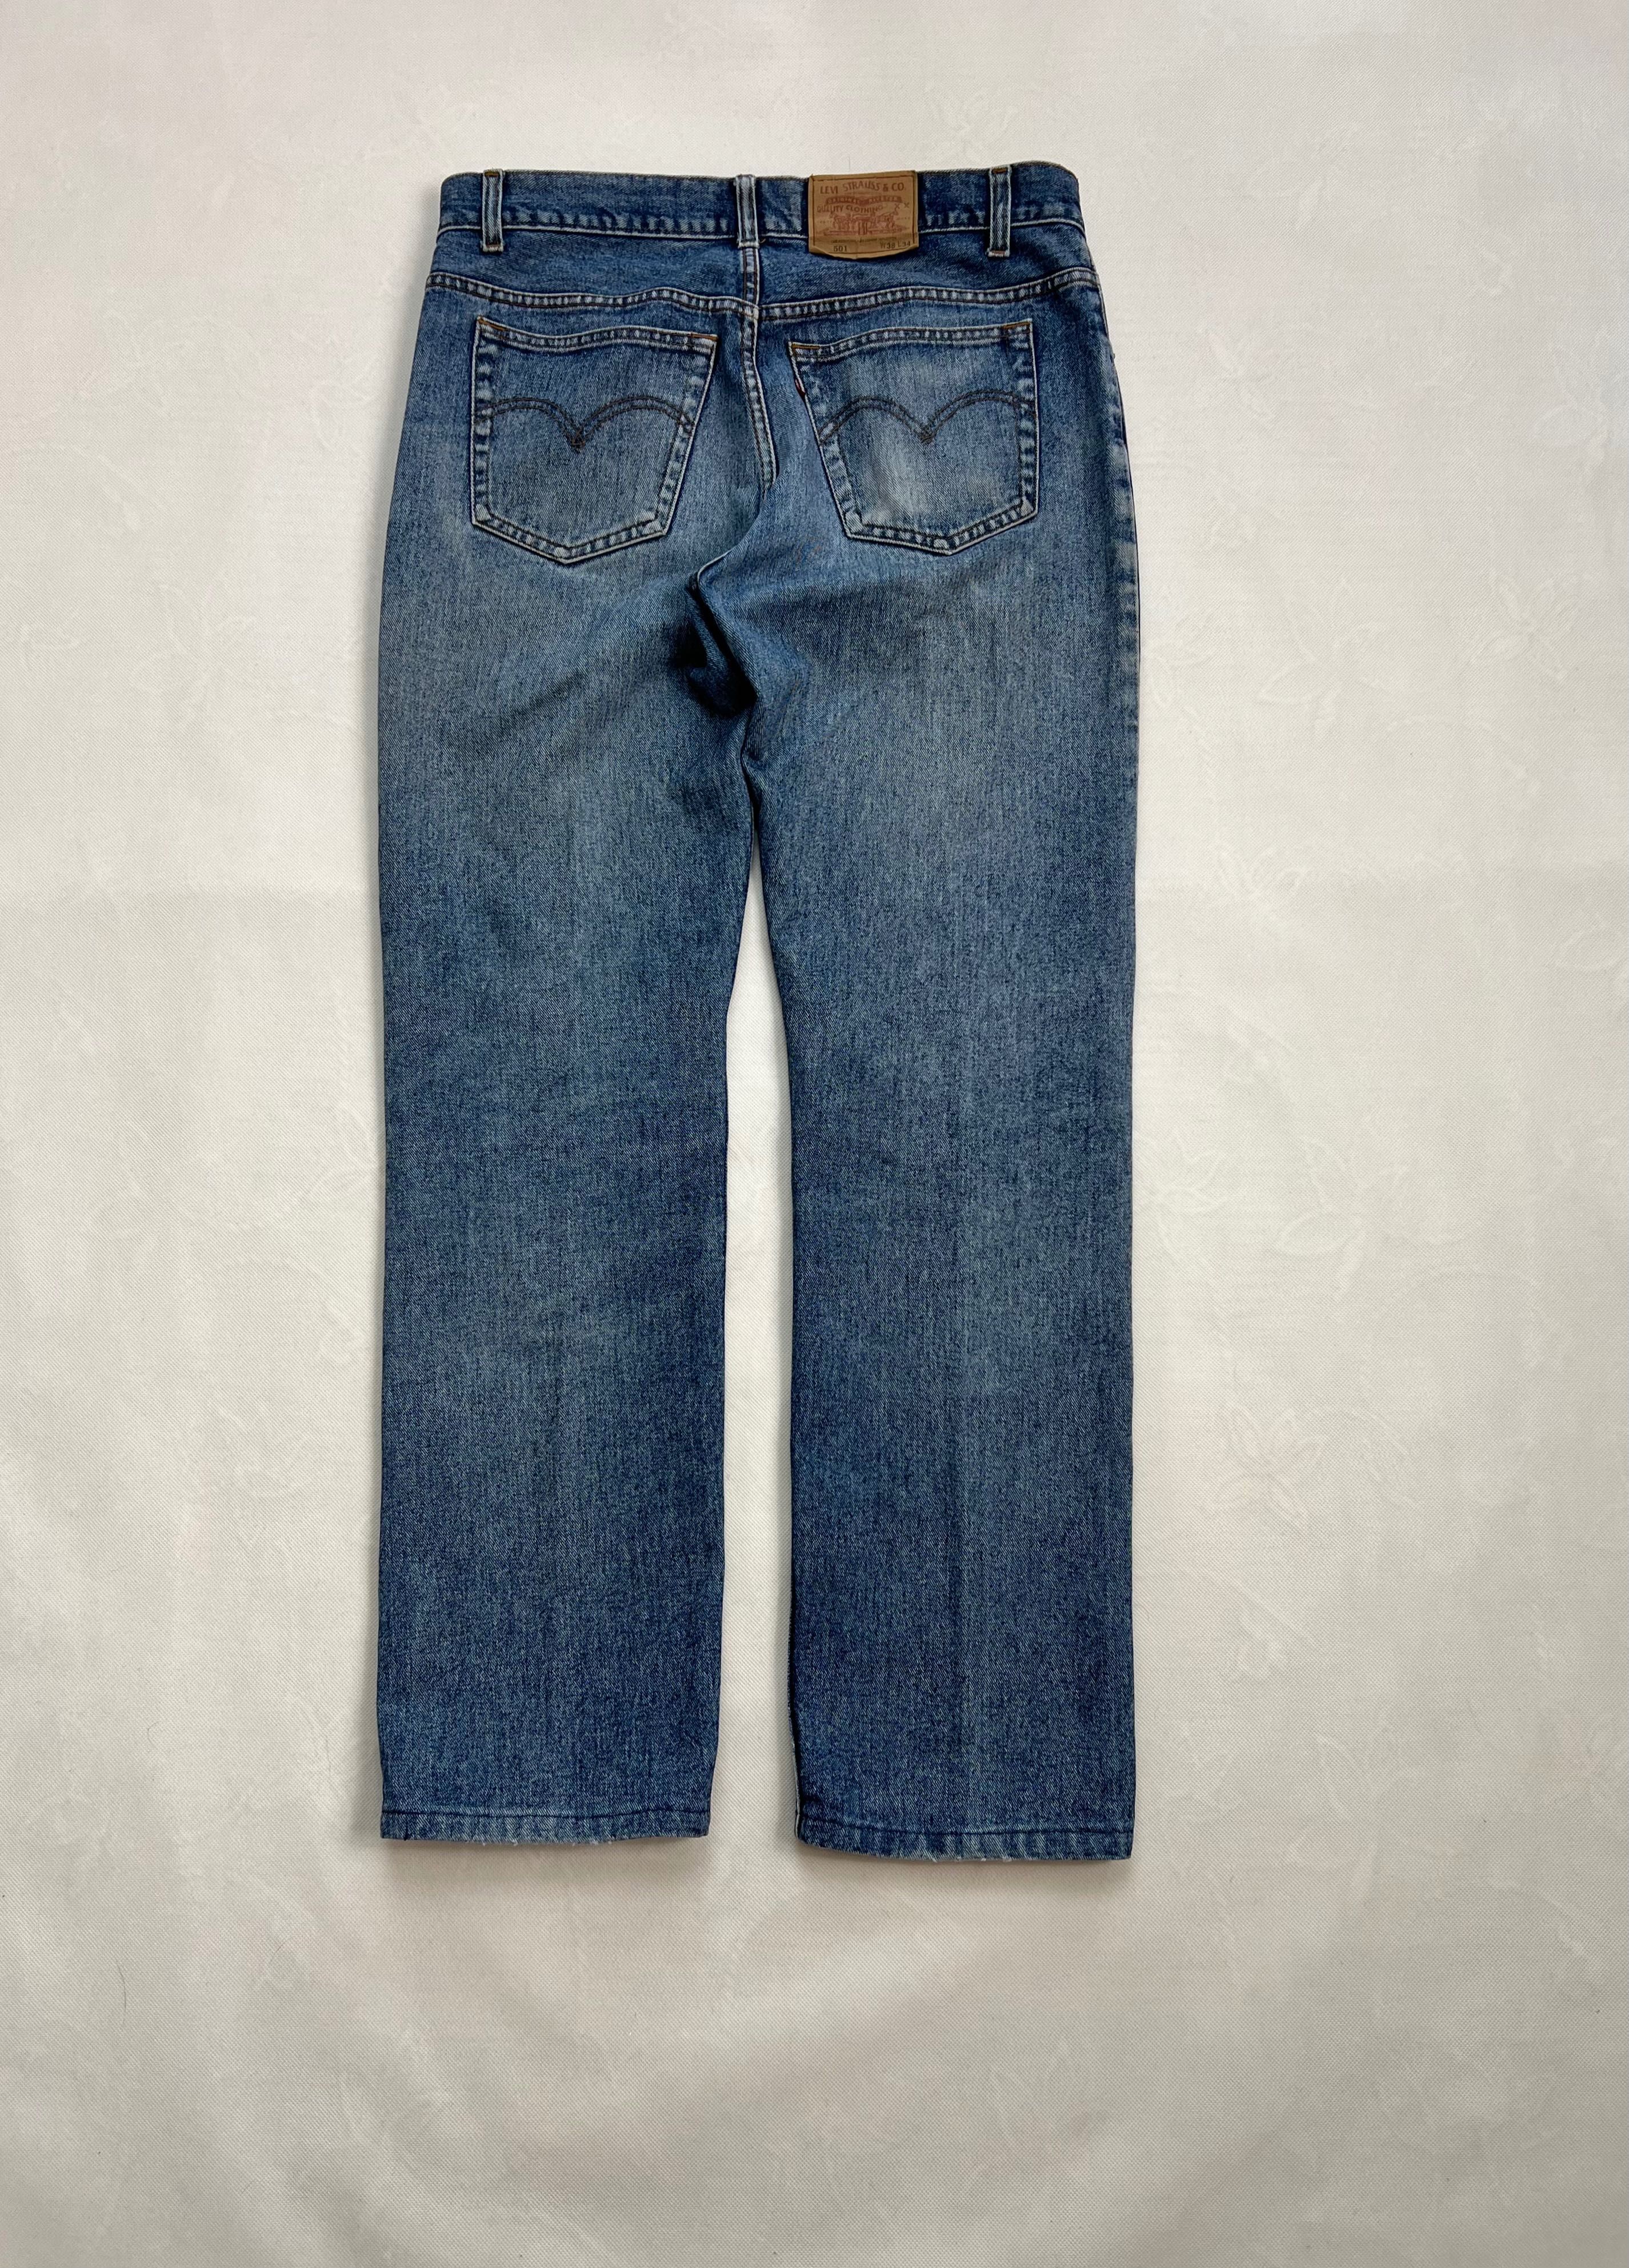 Spodnie Levi’s 501 blue vintage 90’s